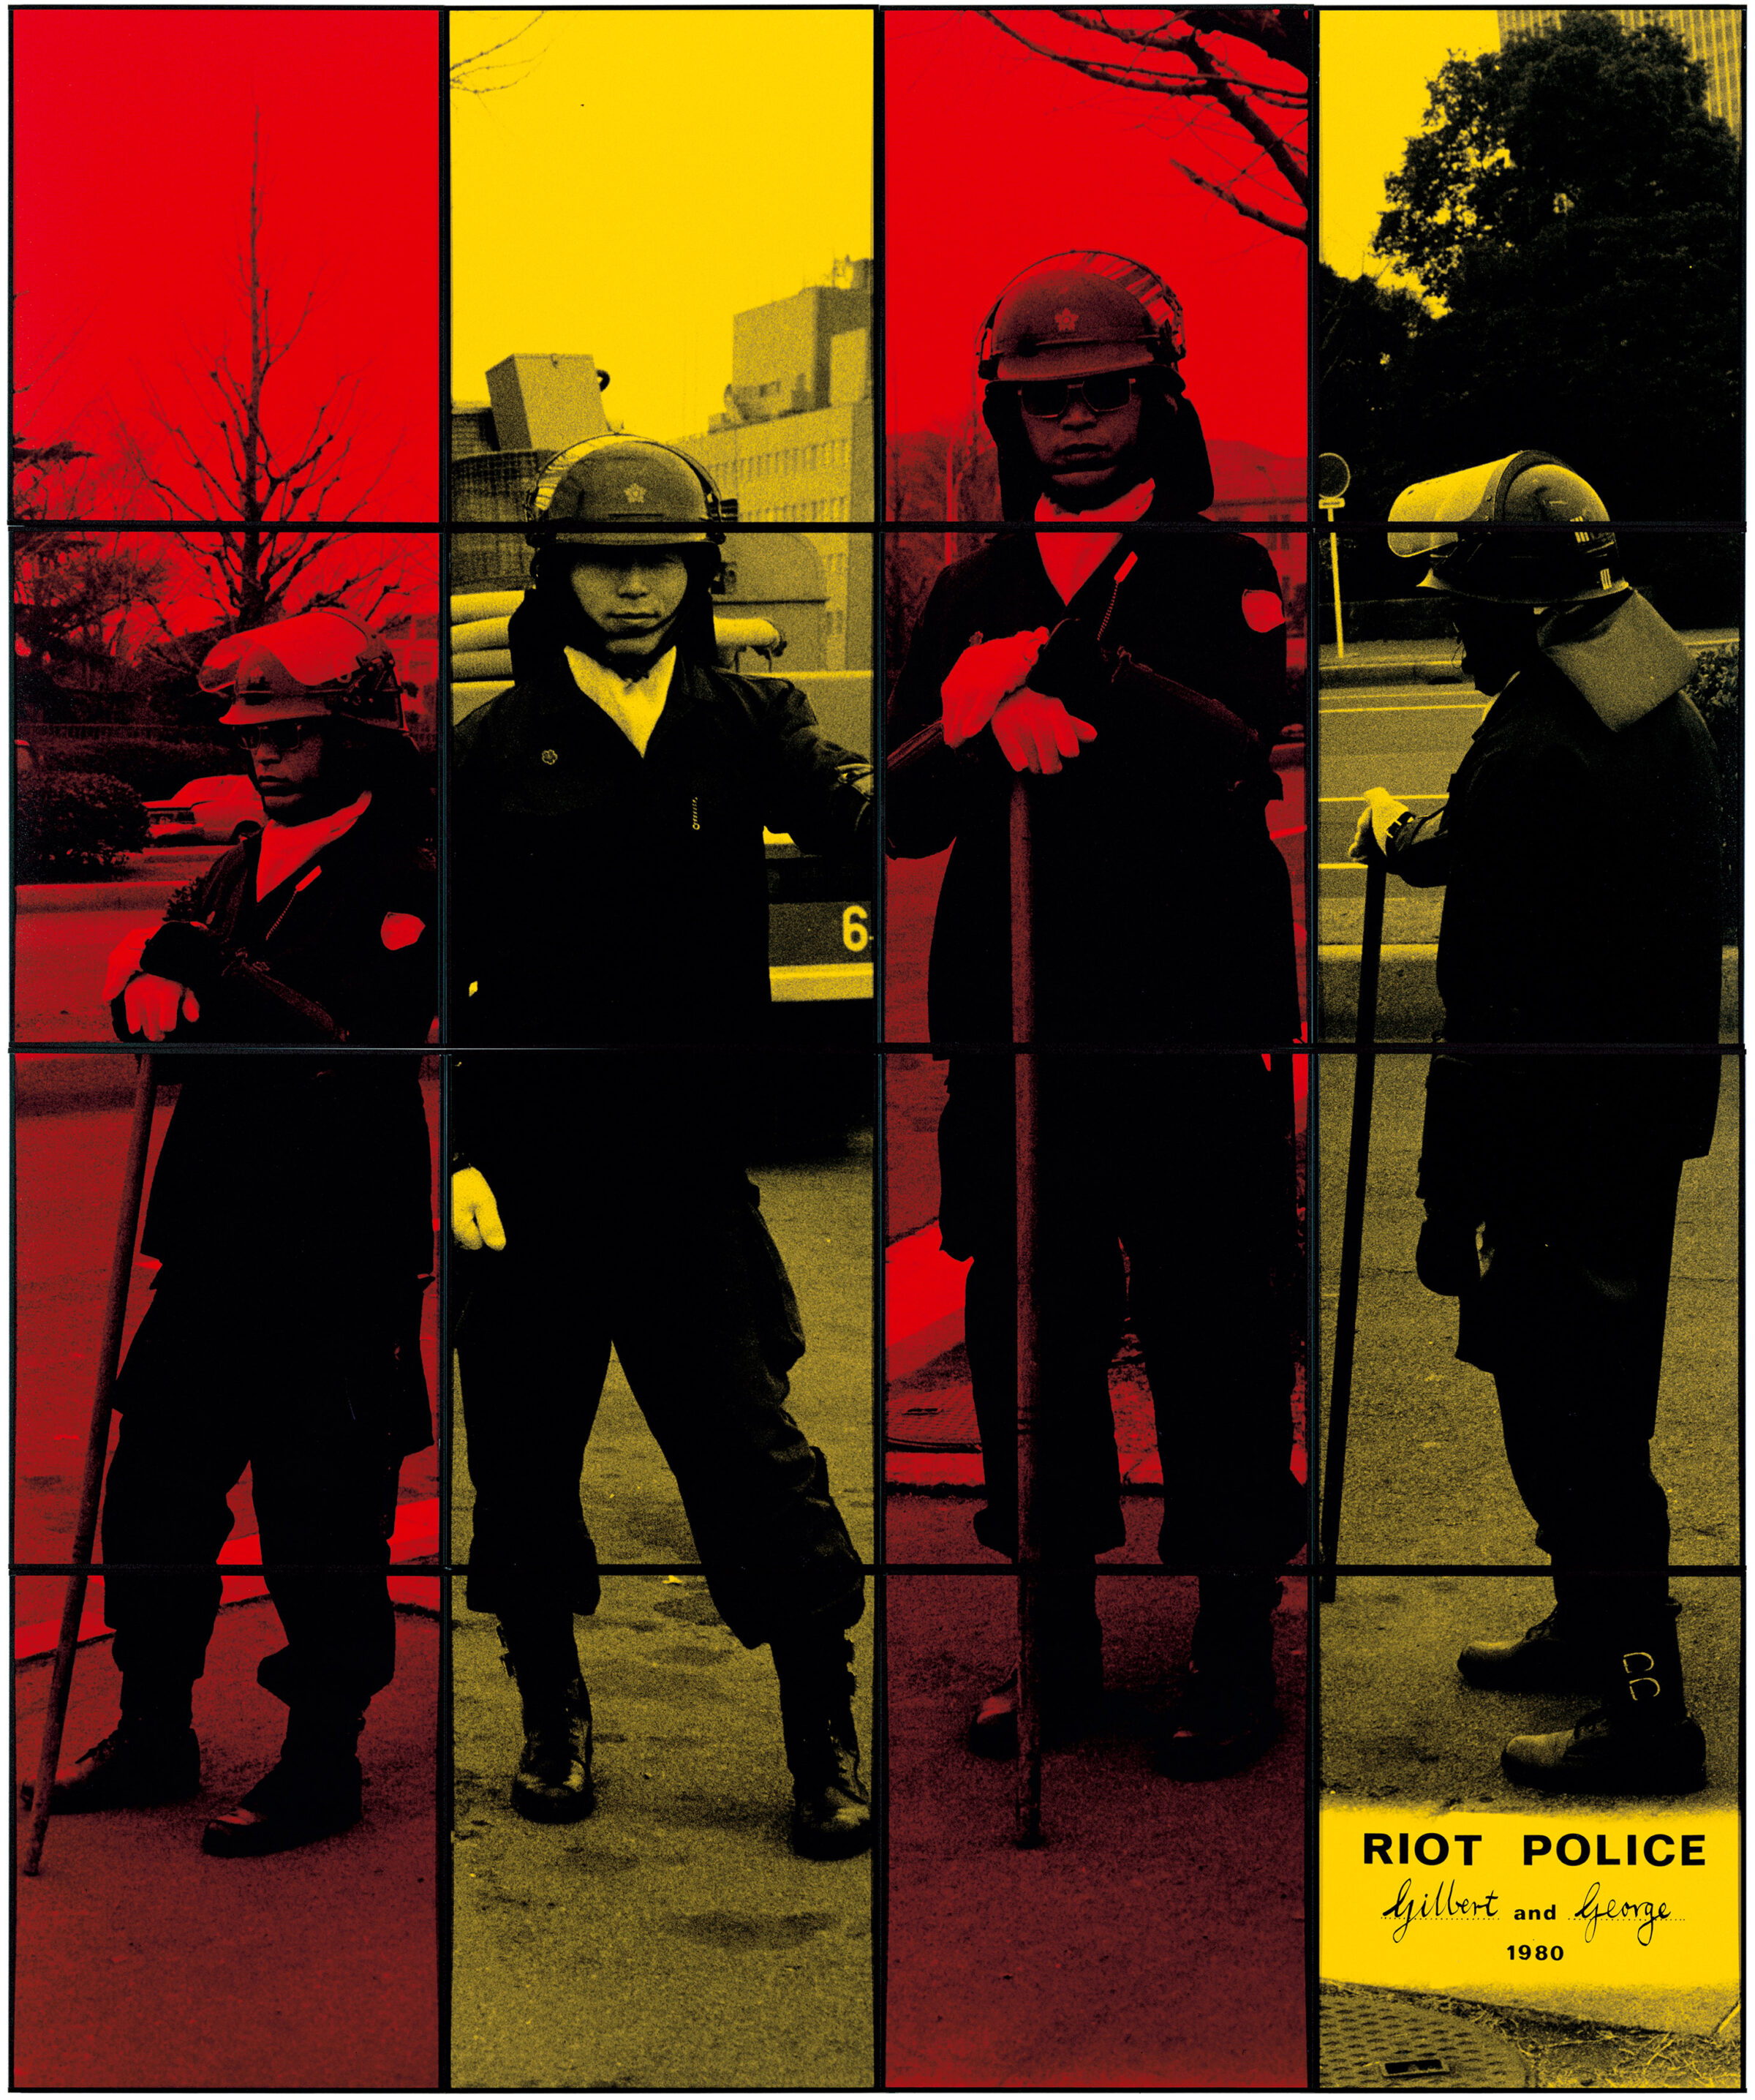 1980 RIOT POLICE